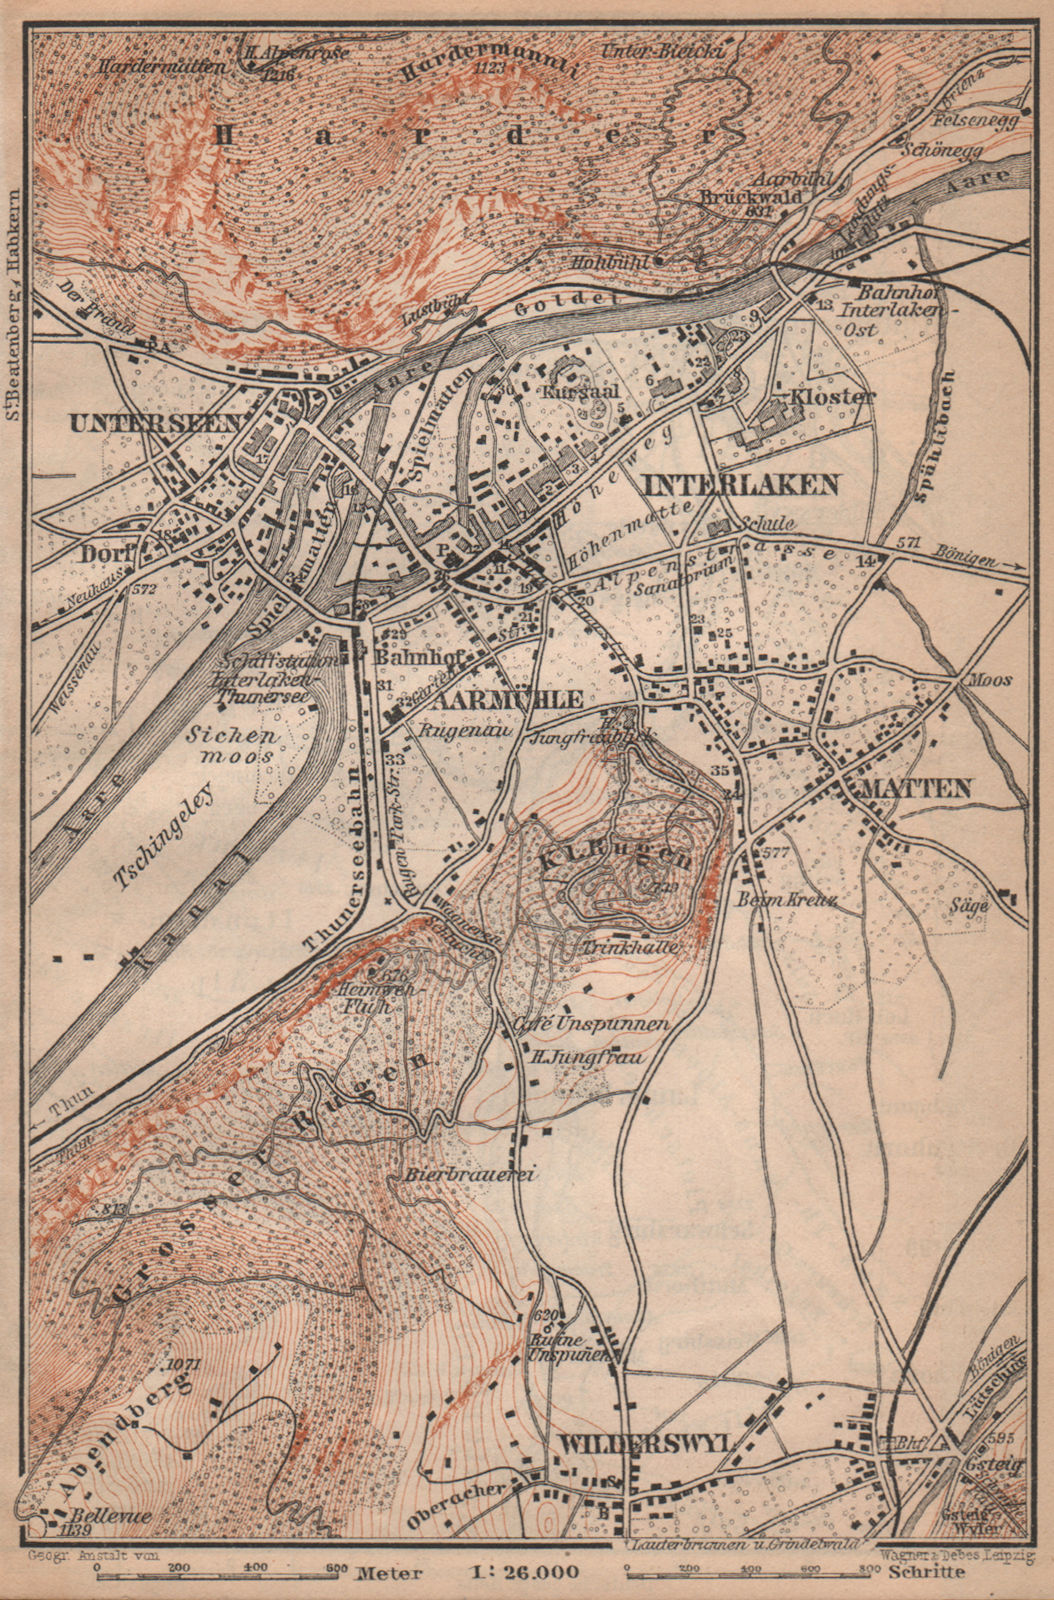 INTERLAKEN ENVIRONS. Unterseen Matten Aarmuhle Wilderswyl. Schweiz 1901 map